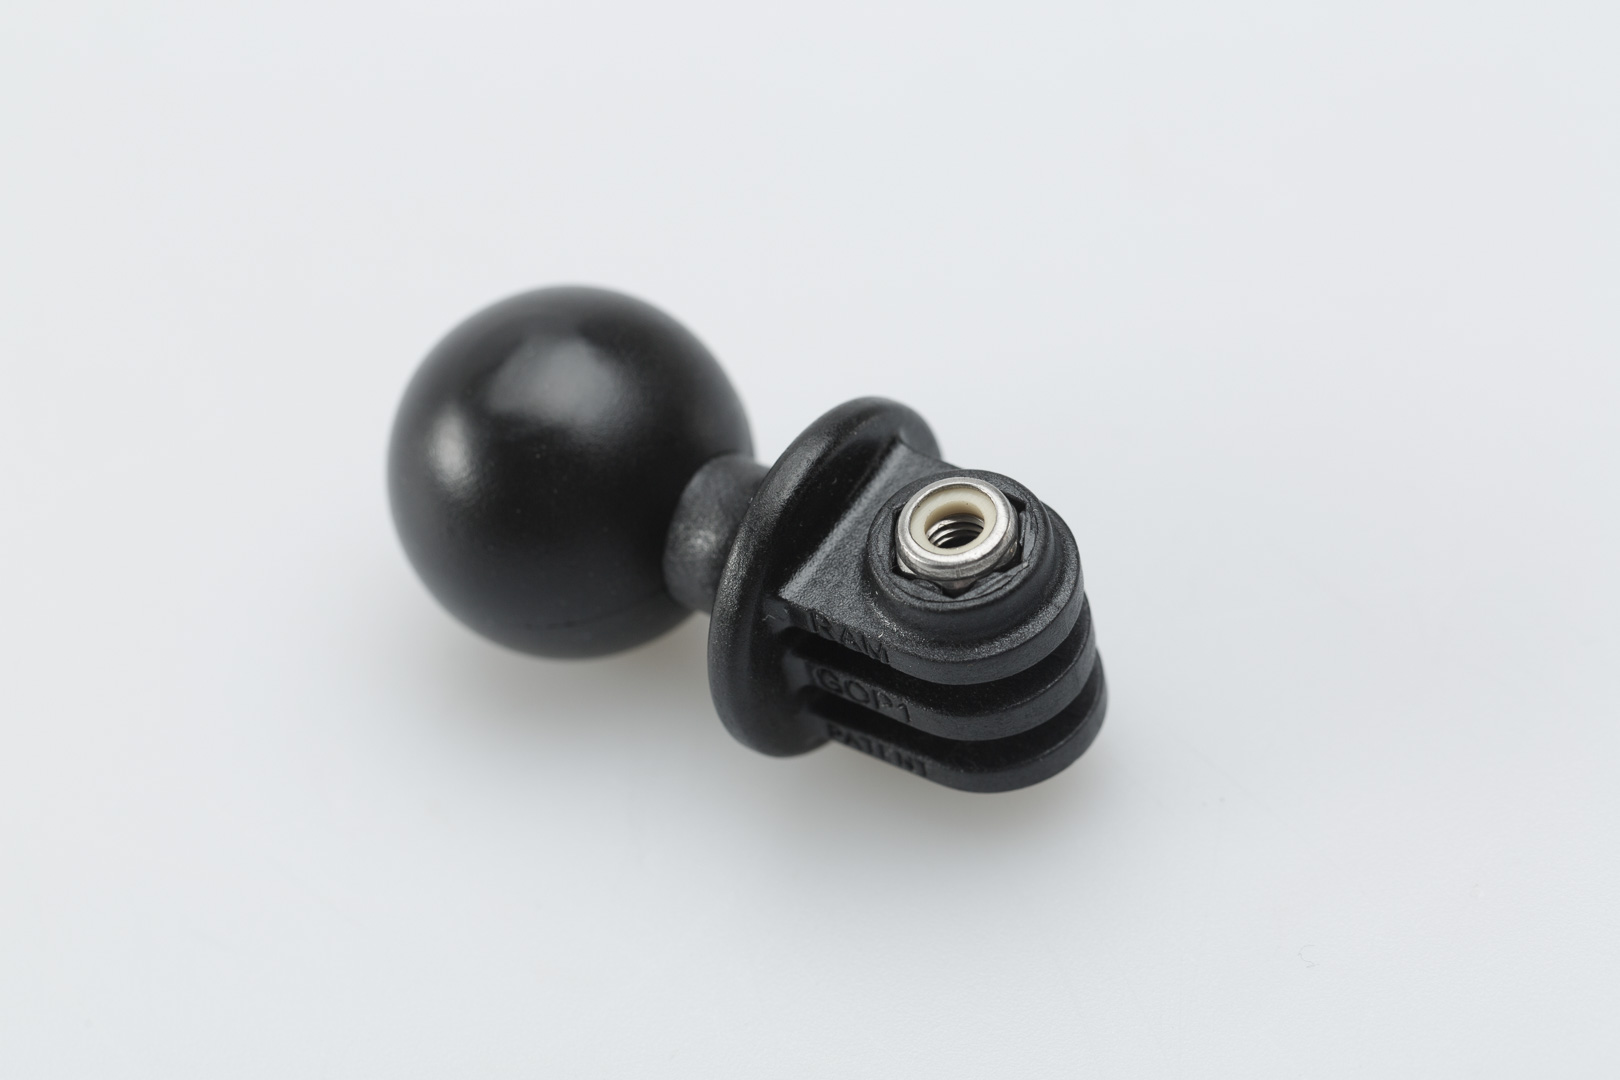 SW-Motech 1" ball for GoPro camera - For RAM arm. Black., black unisex